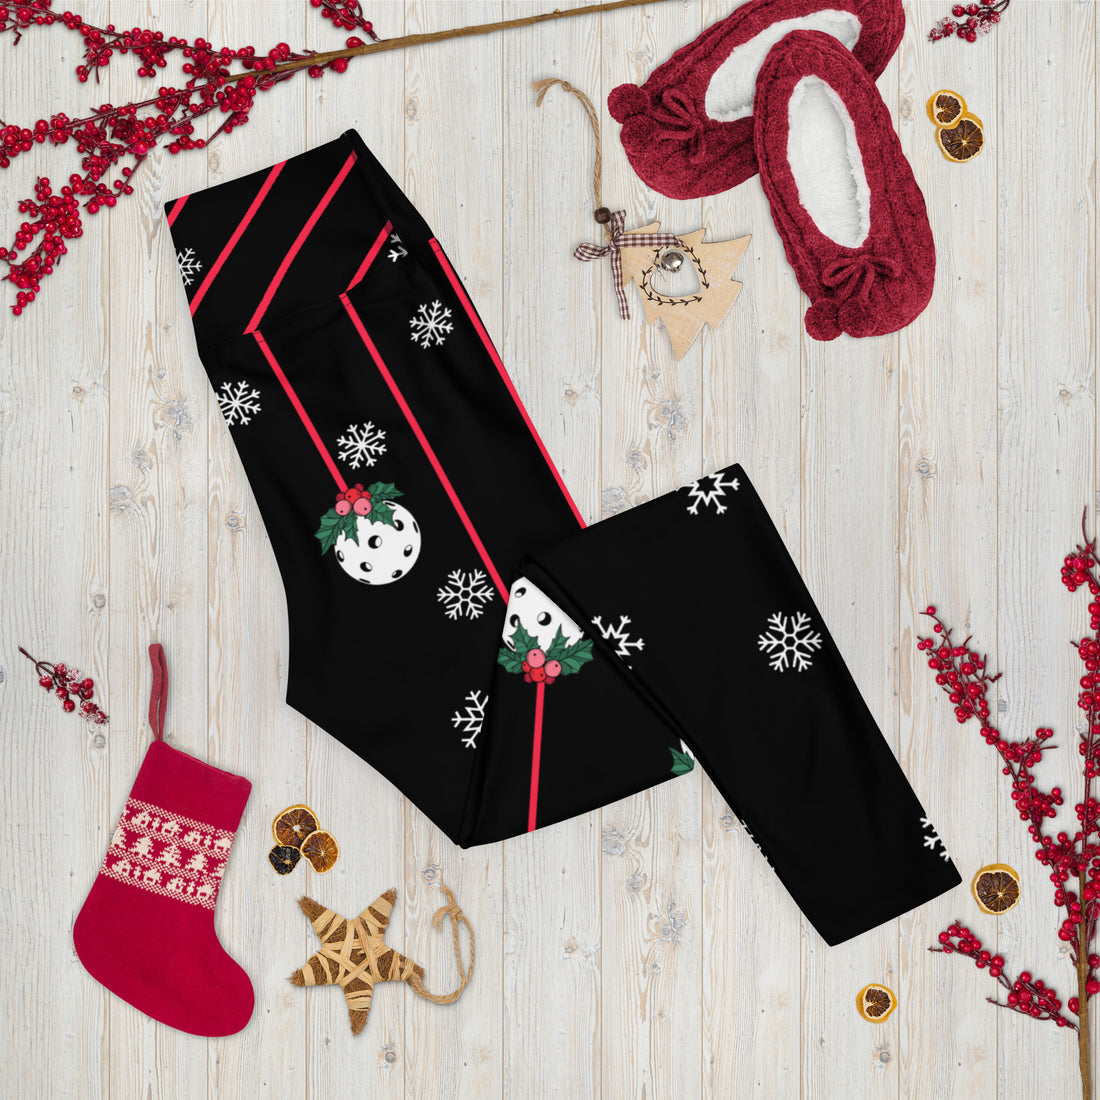 Holly Pickleball© NPL™ Pickleball Leggings – Play Pickleball in Festive Style for the Holidays!